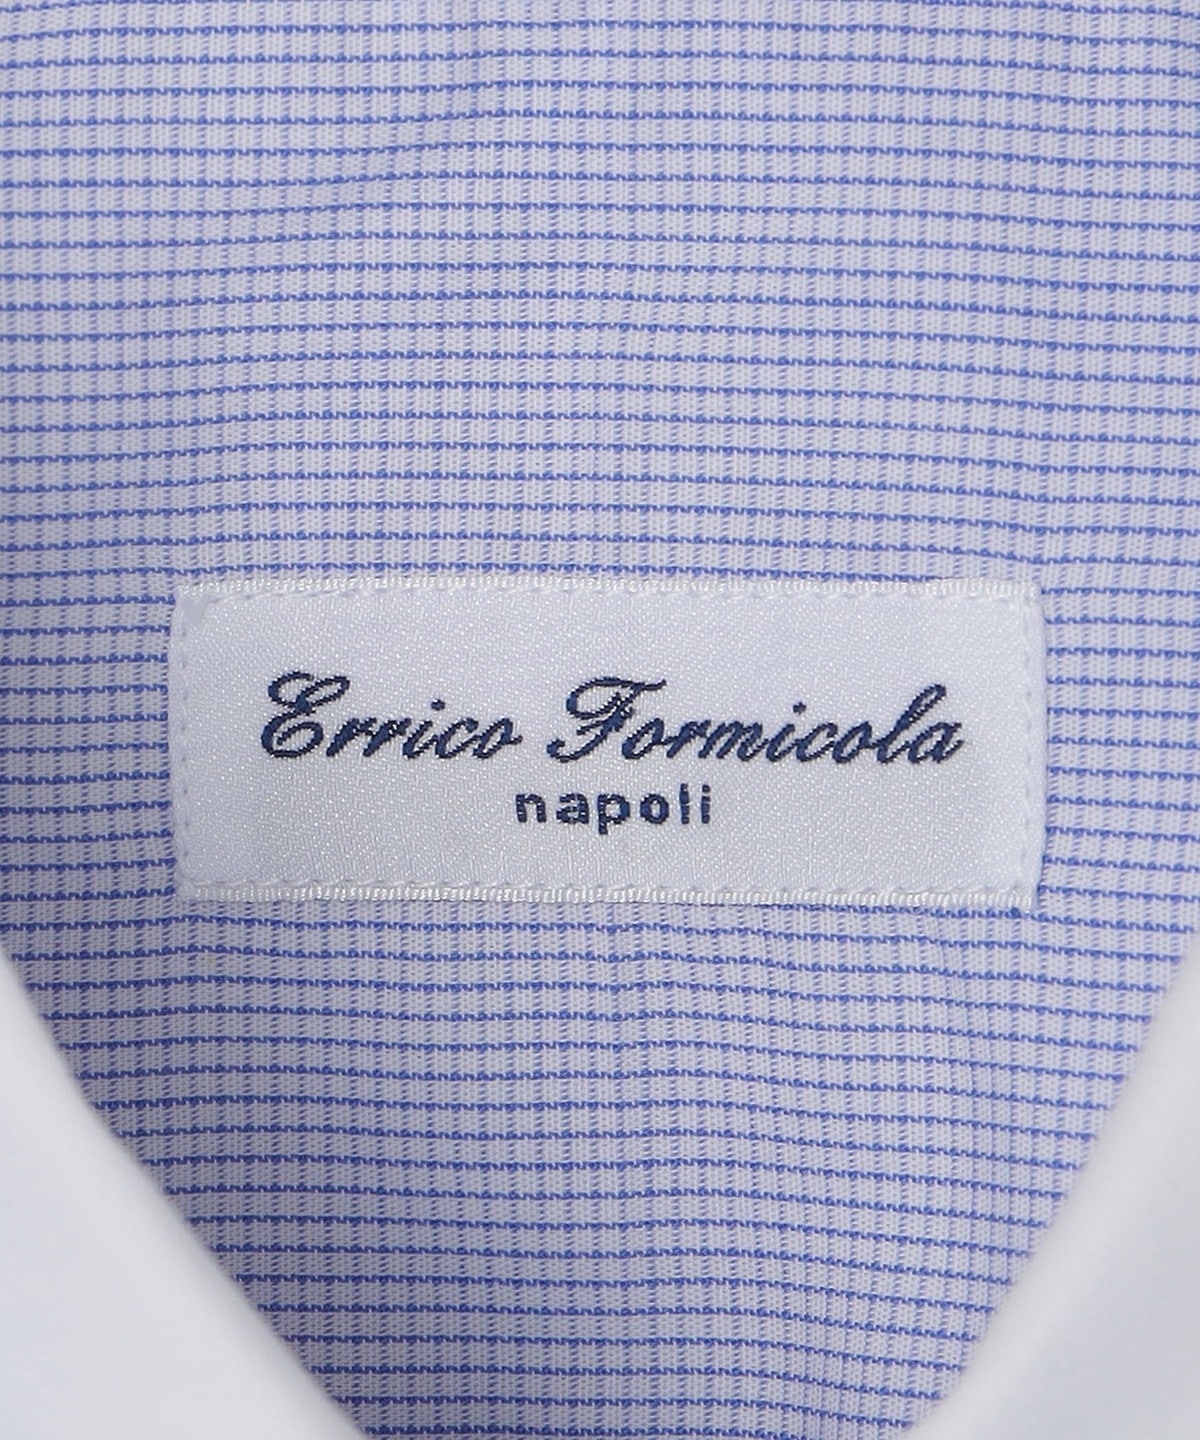 Errico Formicola: ハンフリータブカラー クレリック シャツ: シャツ/ブラウス SHIPS 公式サイト｜株式会社シップス